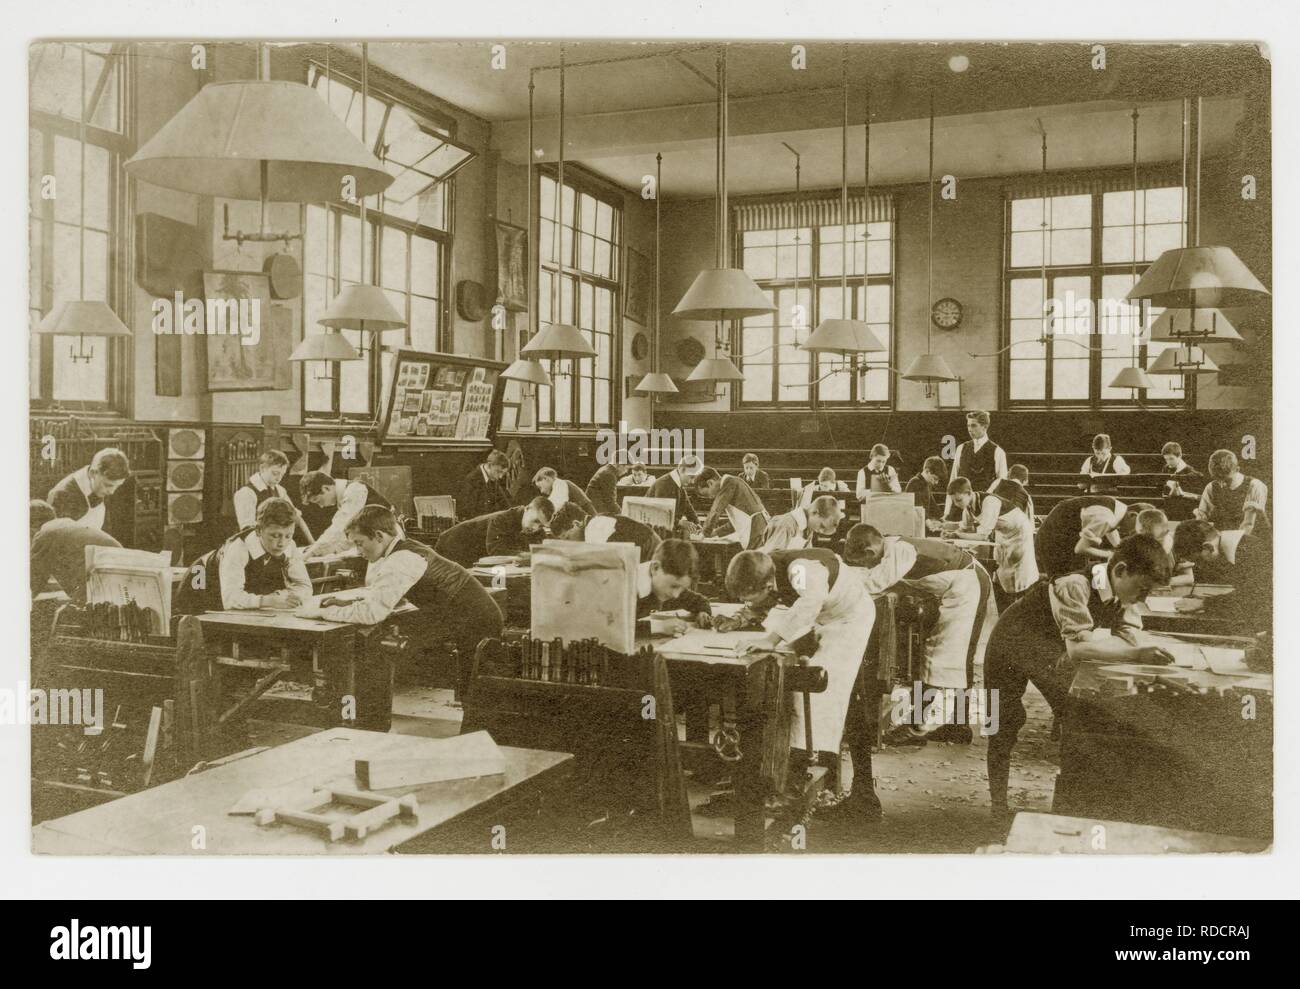 Cartolina edoardiana originale dei primi anni '1900 degli scolari edoardiani che disegnano piani per la lavorazione del legno in una classe, intorno al 1910, Regno Unito Foto Stock